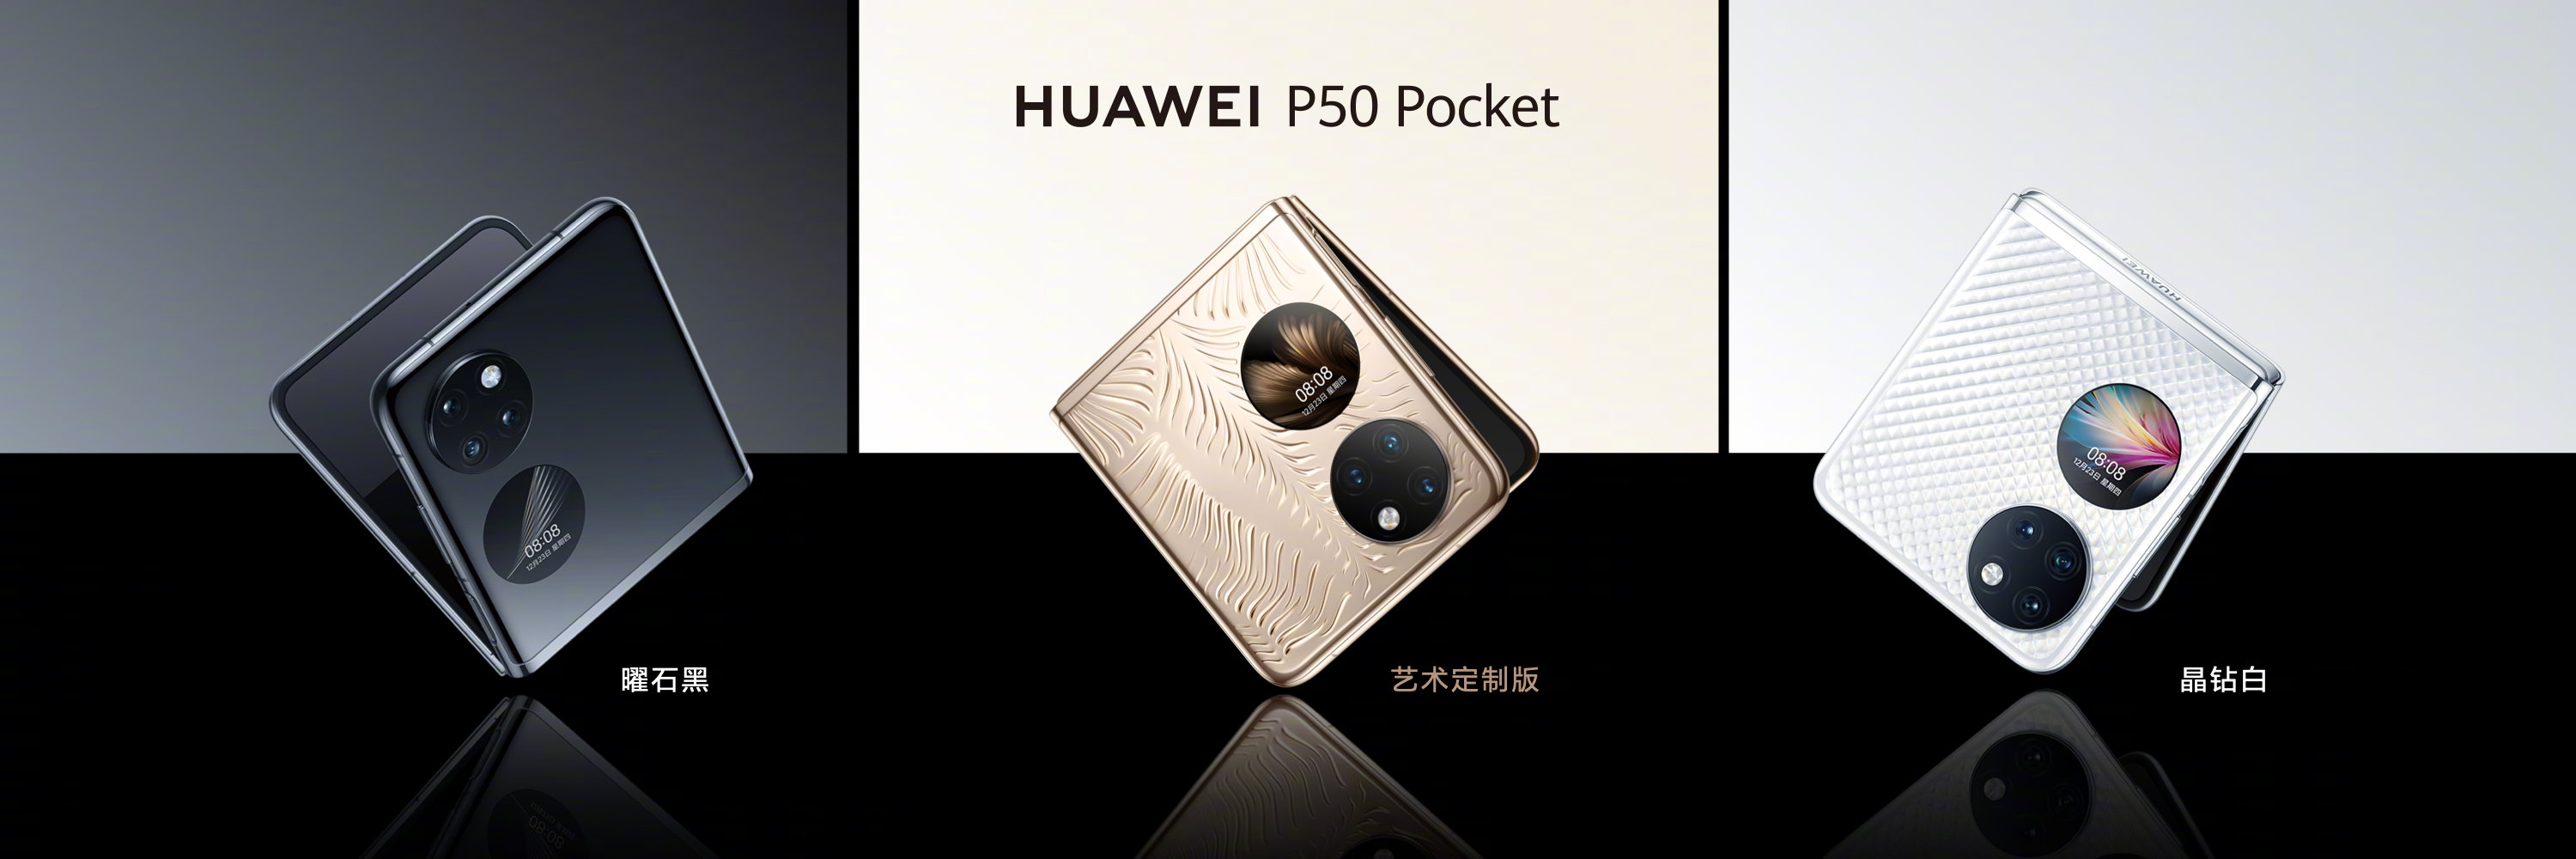 Huawei P50 Pocket ist ein Konkurrent des Samsung Galaxy Z Flip 3 mit  Snapdragon 888 ab 1.410 US-Dollar | gagadget.com